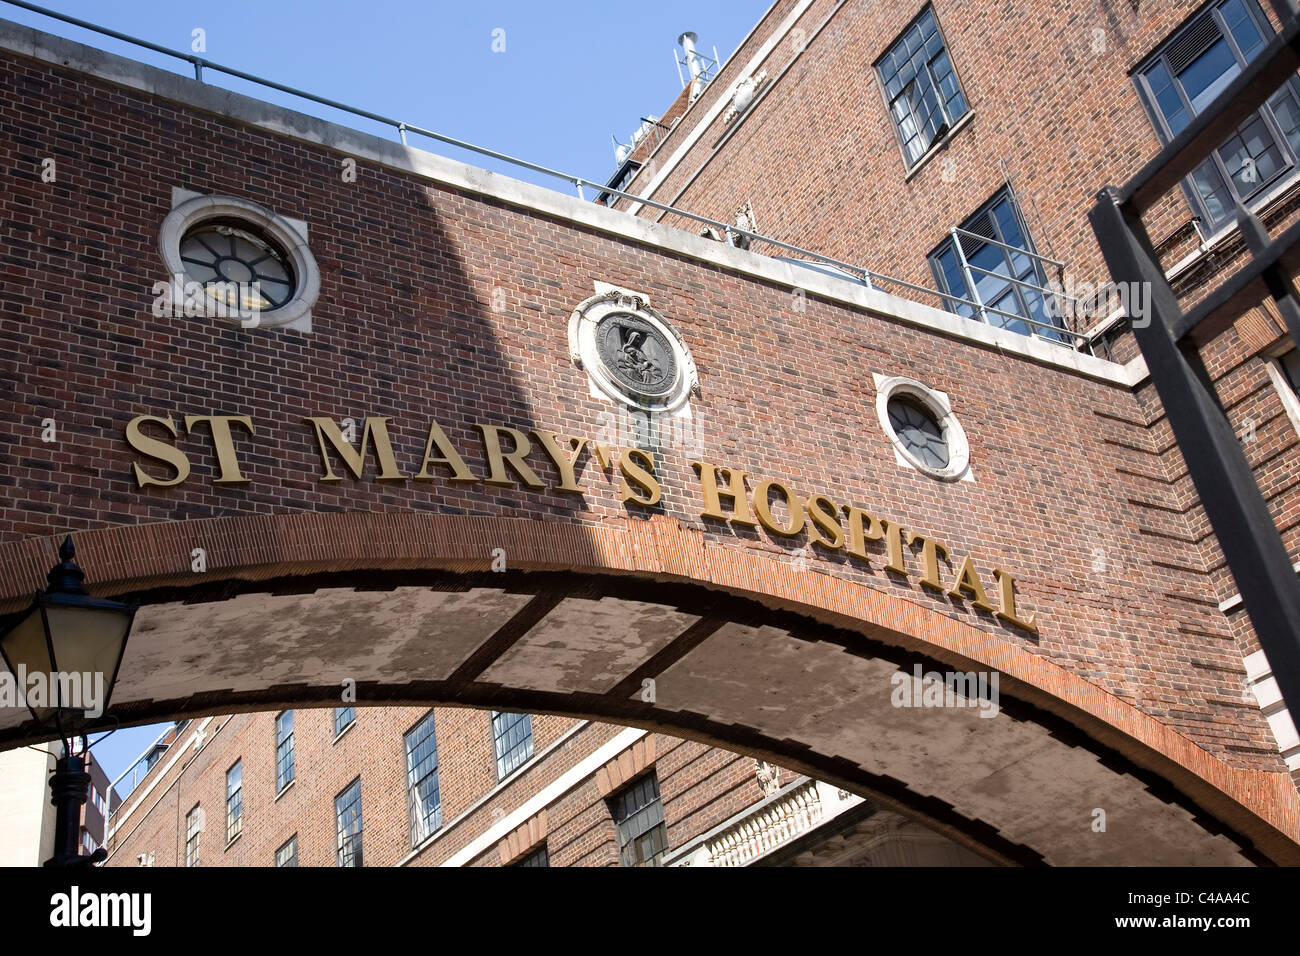 St Mary's Hospital - Praed Street Stock Photo